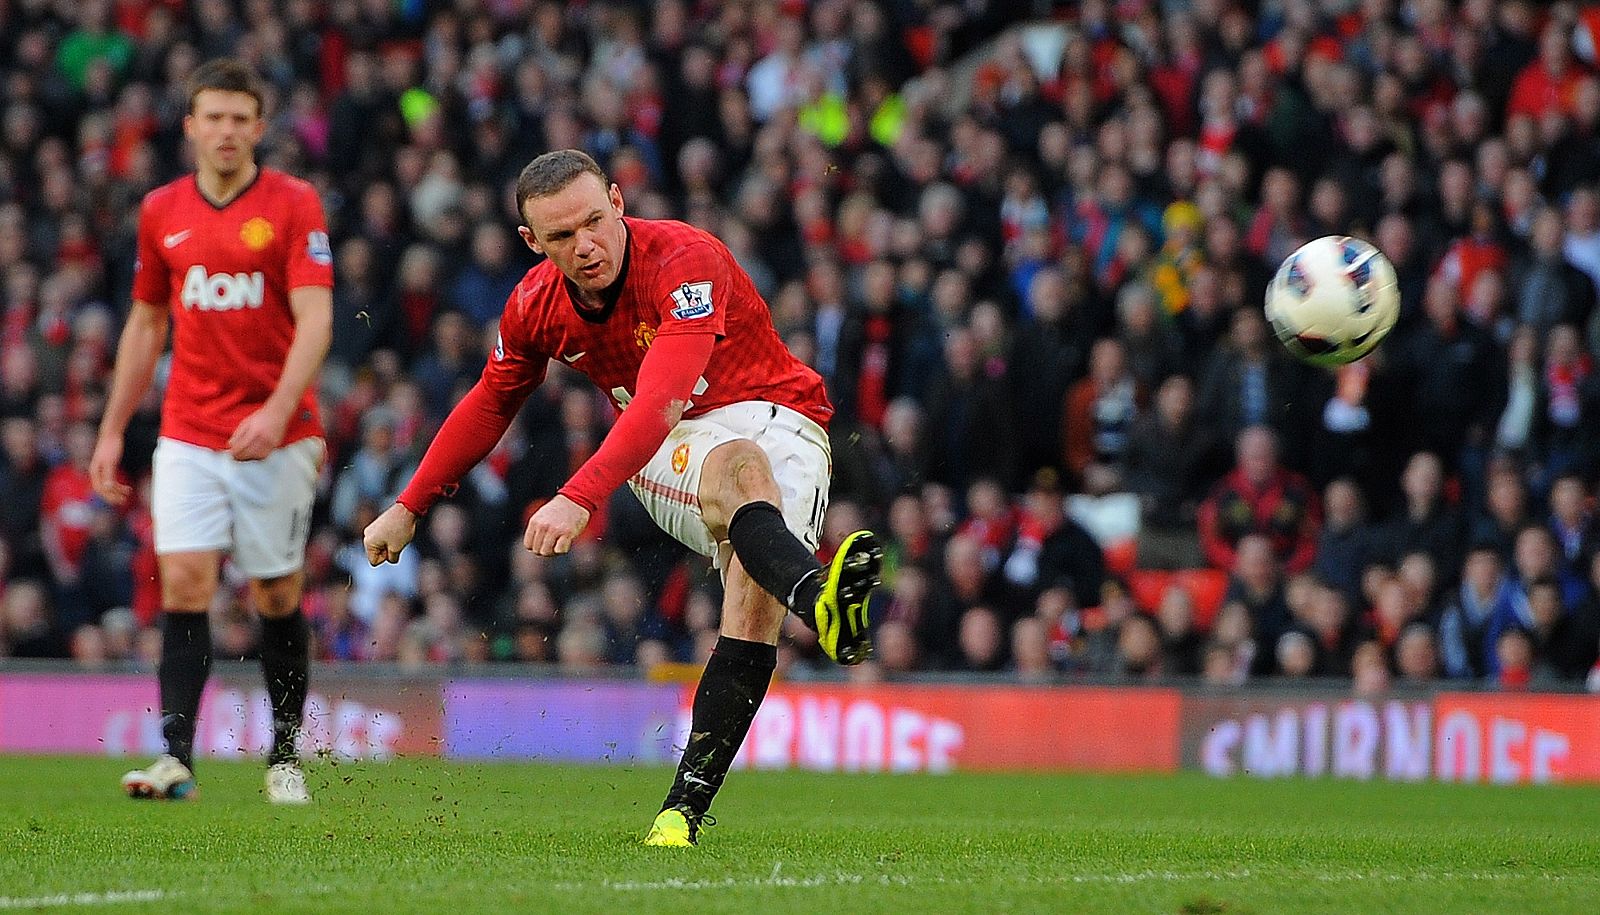 El goleador del Manchester United, Wayne Rooney, chuta a puerta